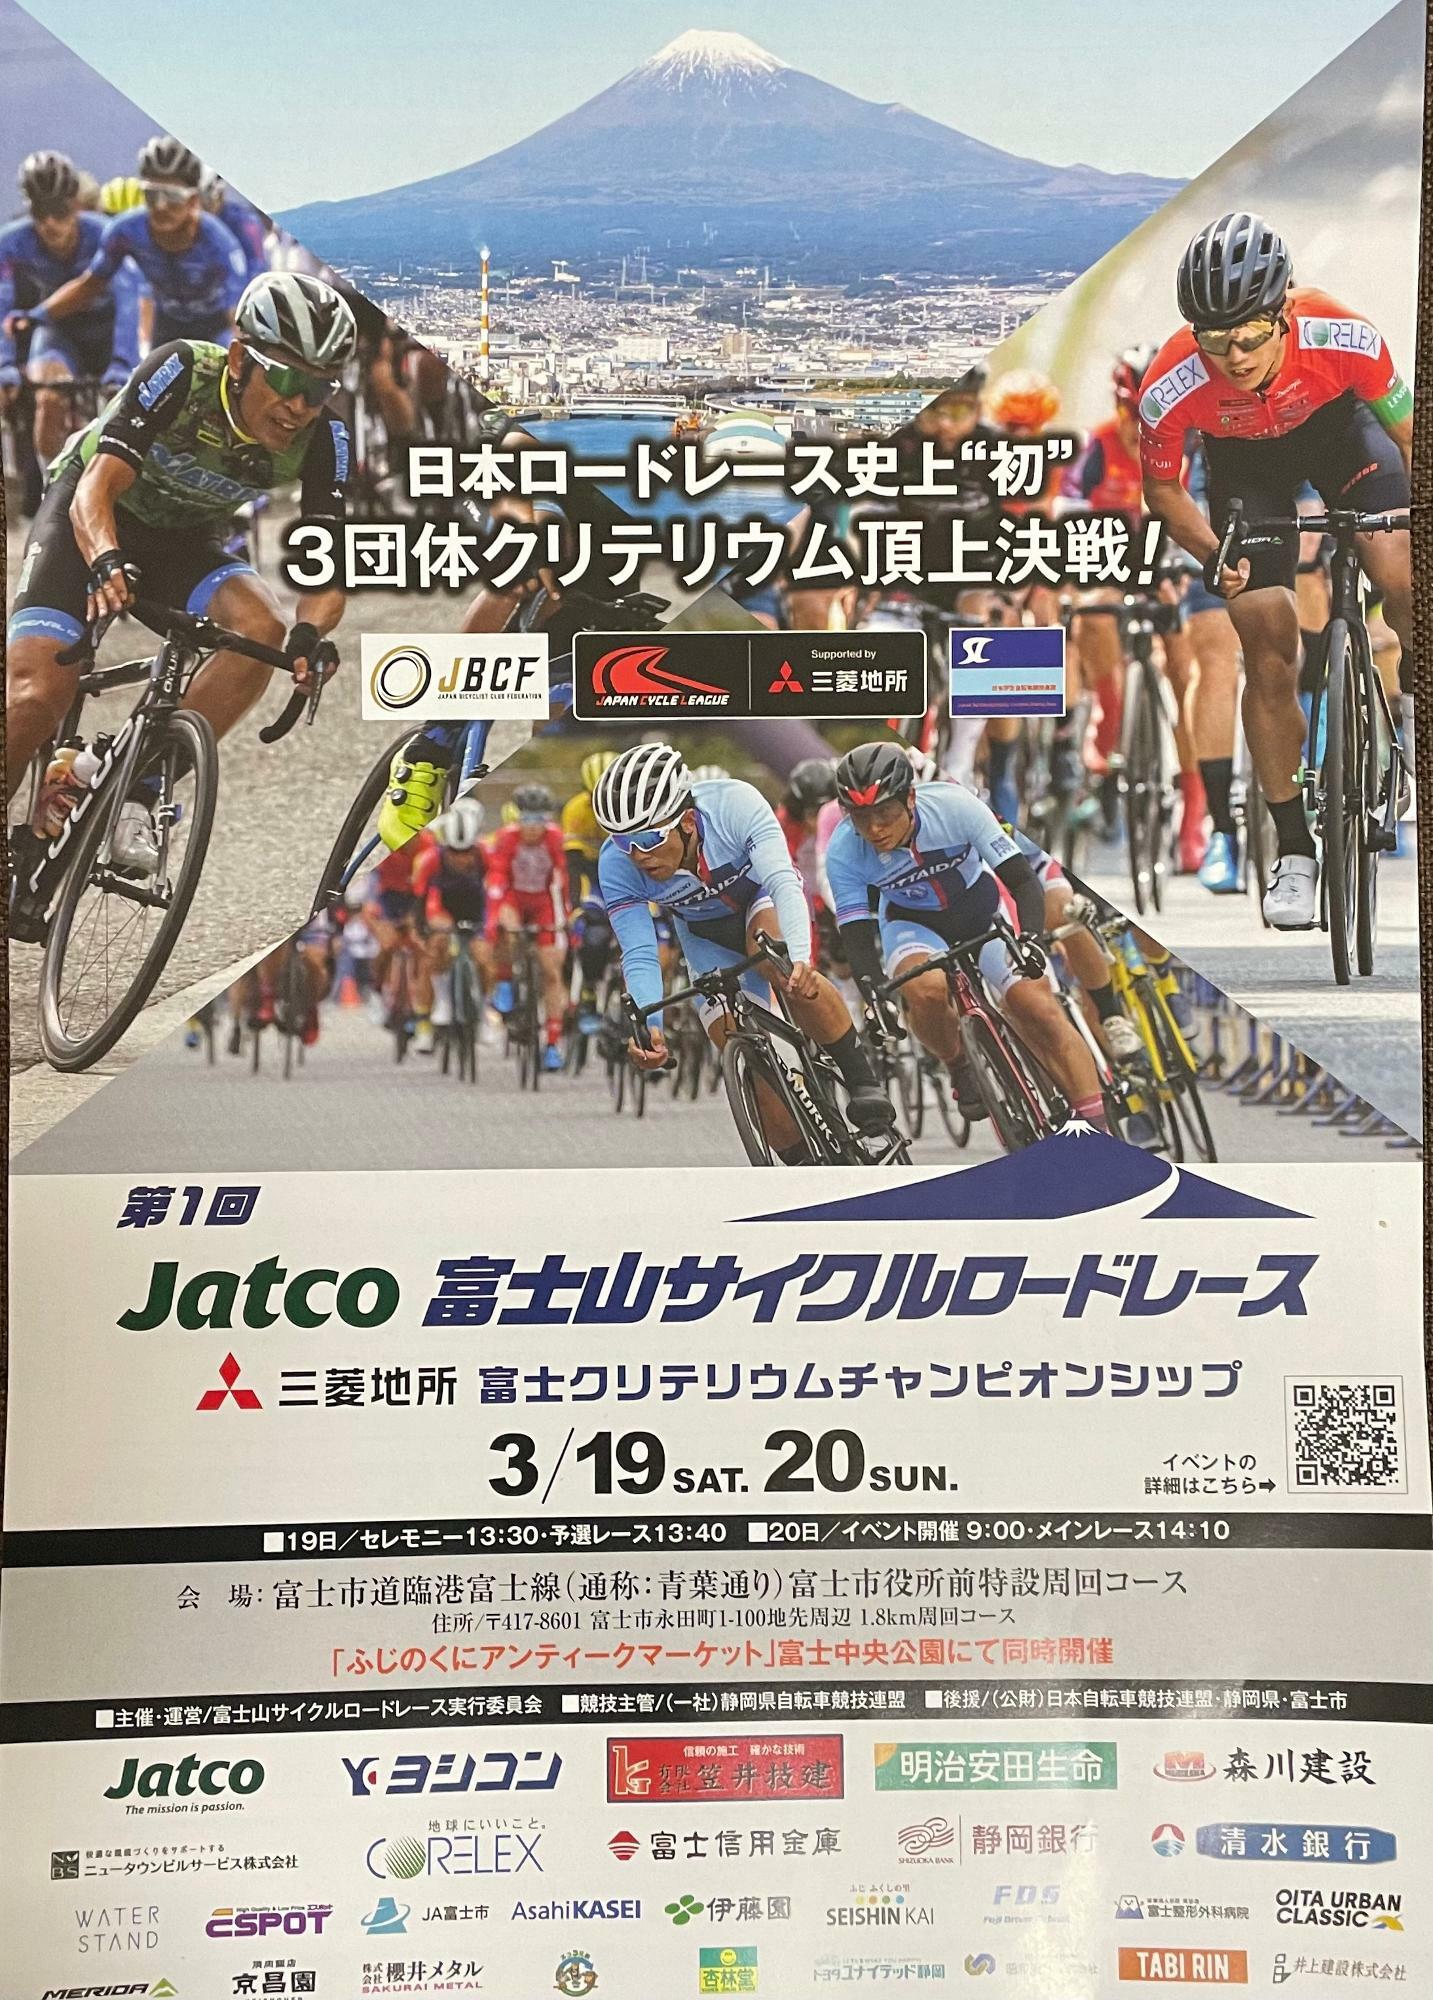 第1回Jatco 富士山サイクルロードレース